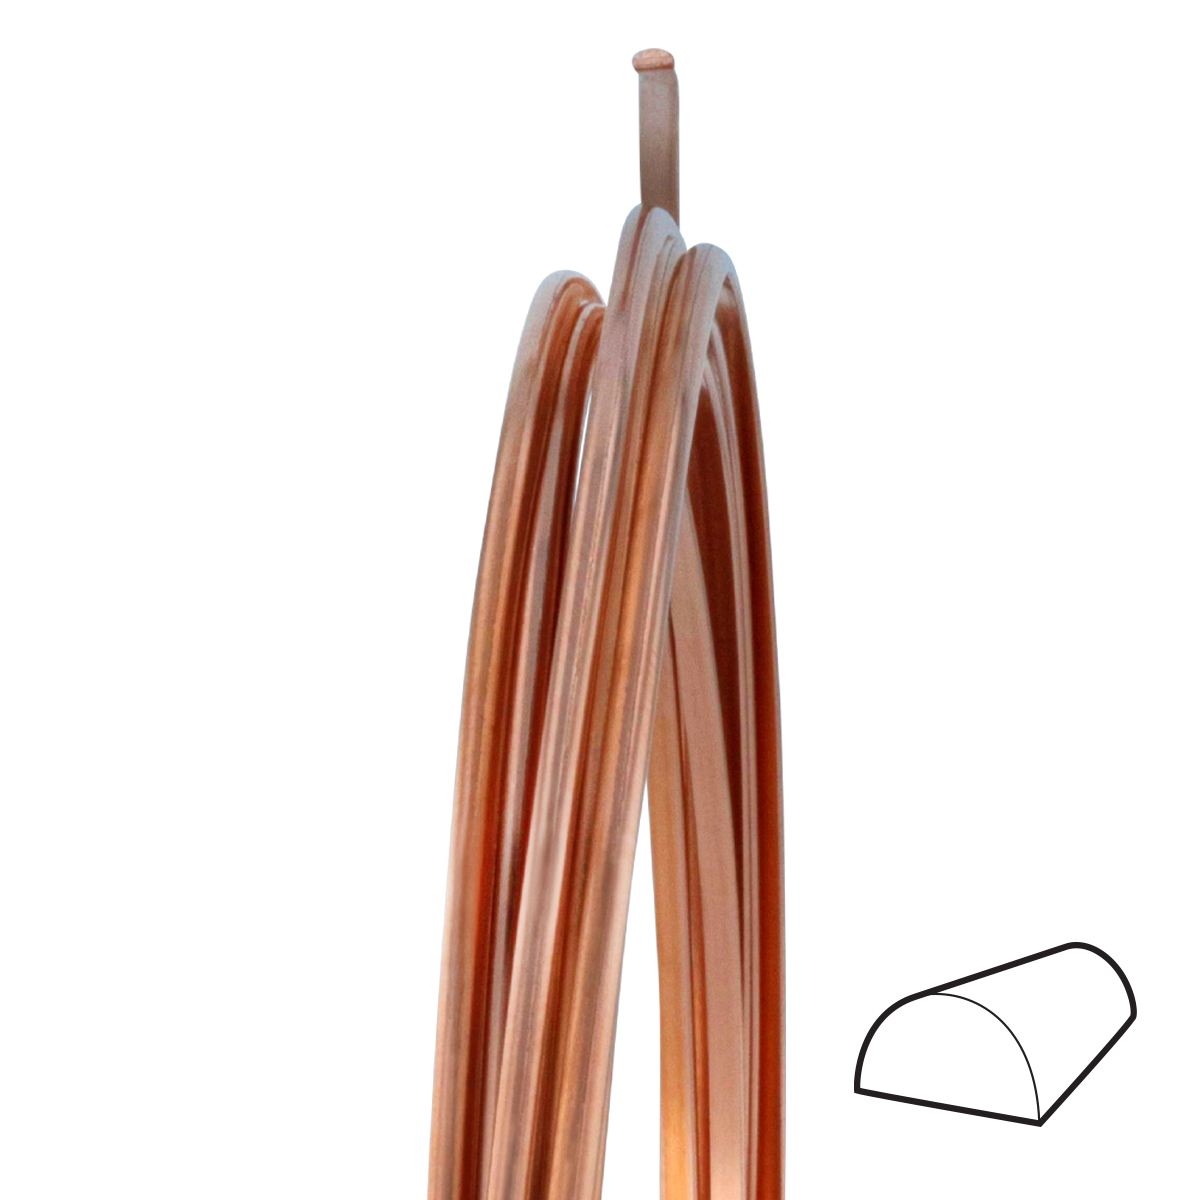 12 Gauge Half Round Dead Soft Copper Wire: Wire Jewelry, Wire Wrap  Tutorials